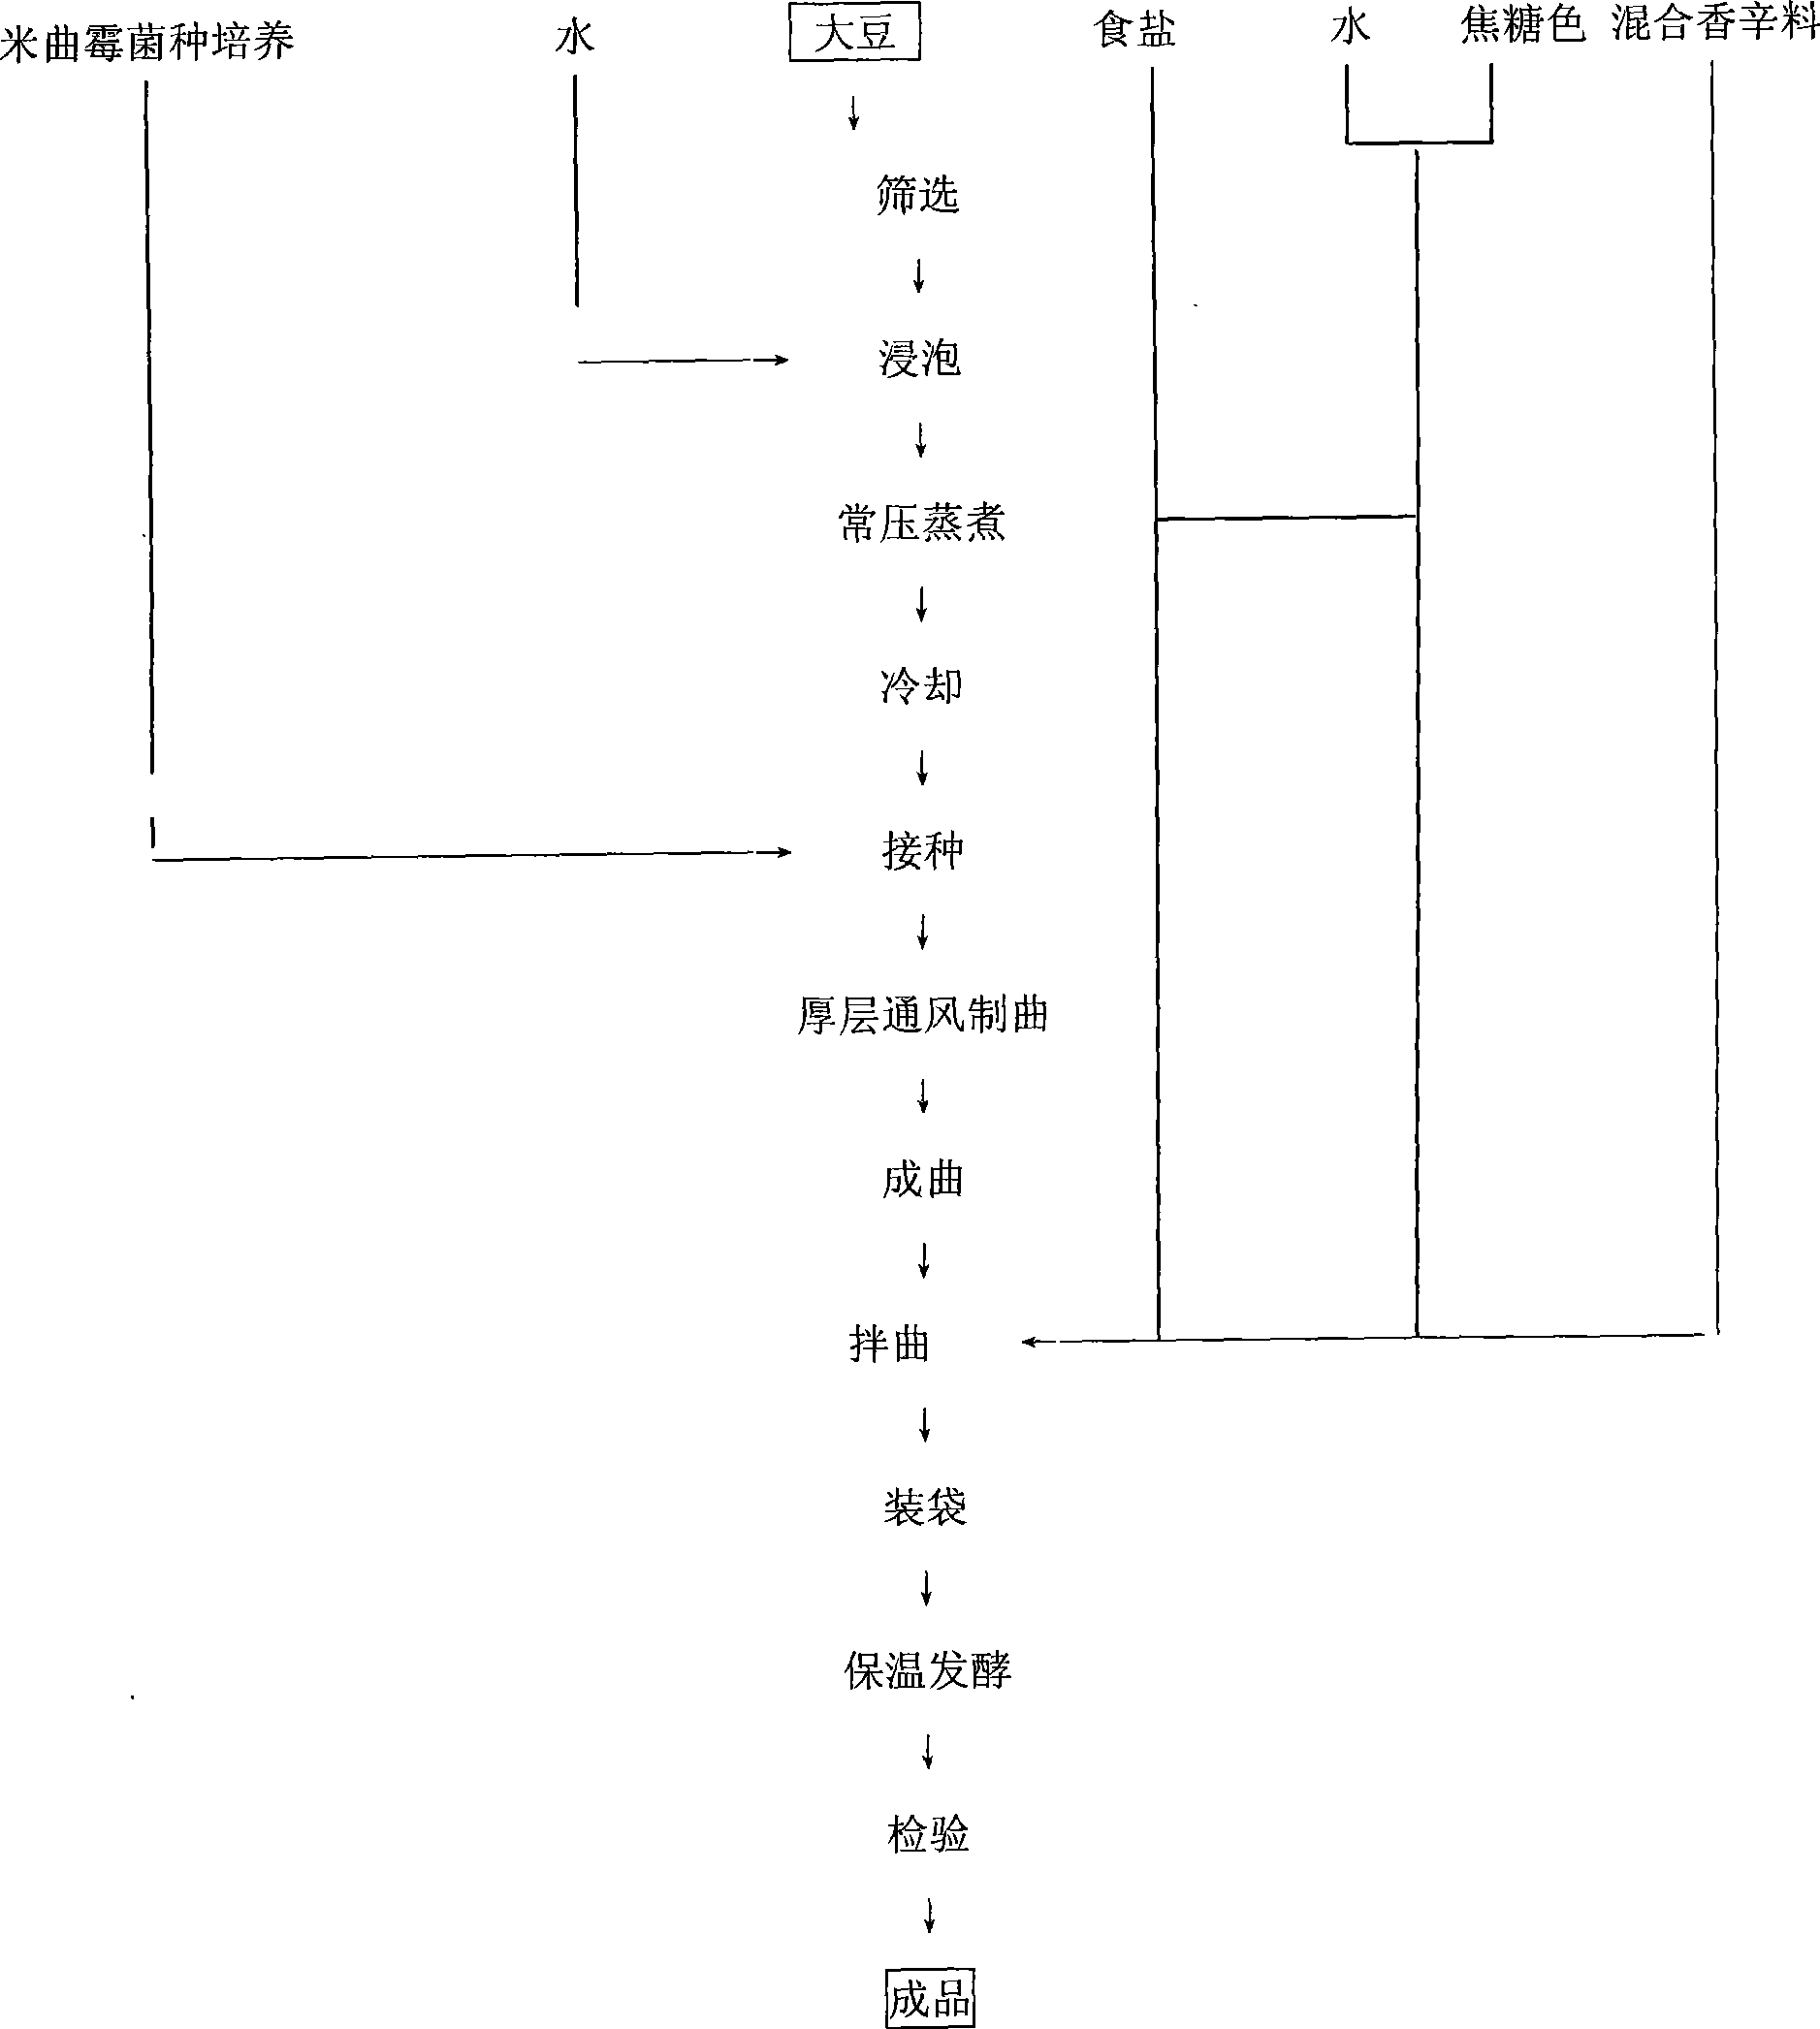 Aspergillus oryzae type novel technique for producing fermented soya bean